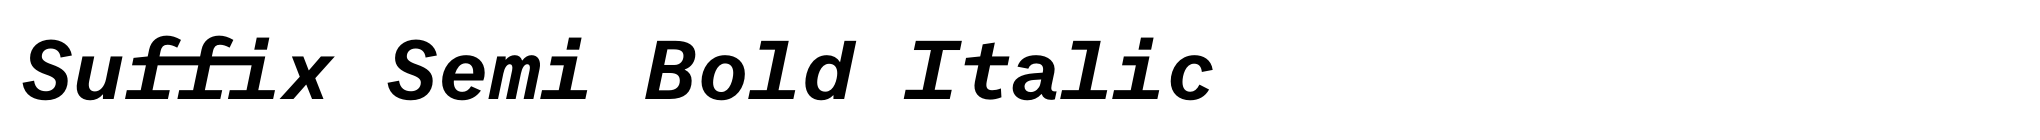 Suffix Semi Bold Italic image